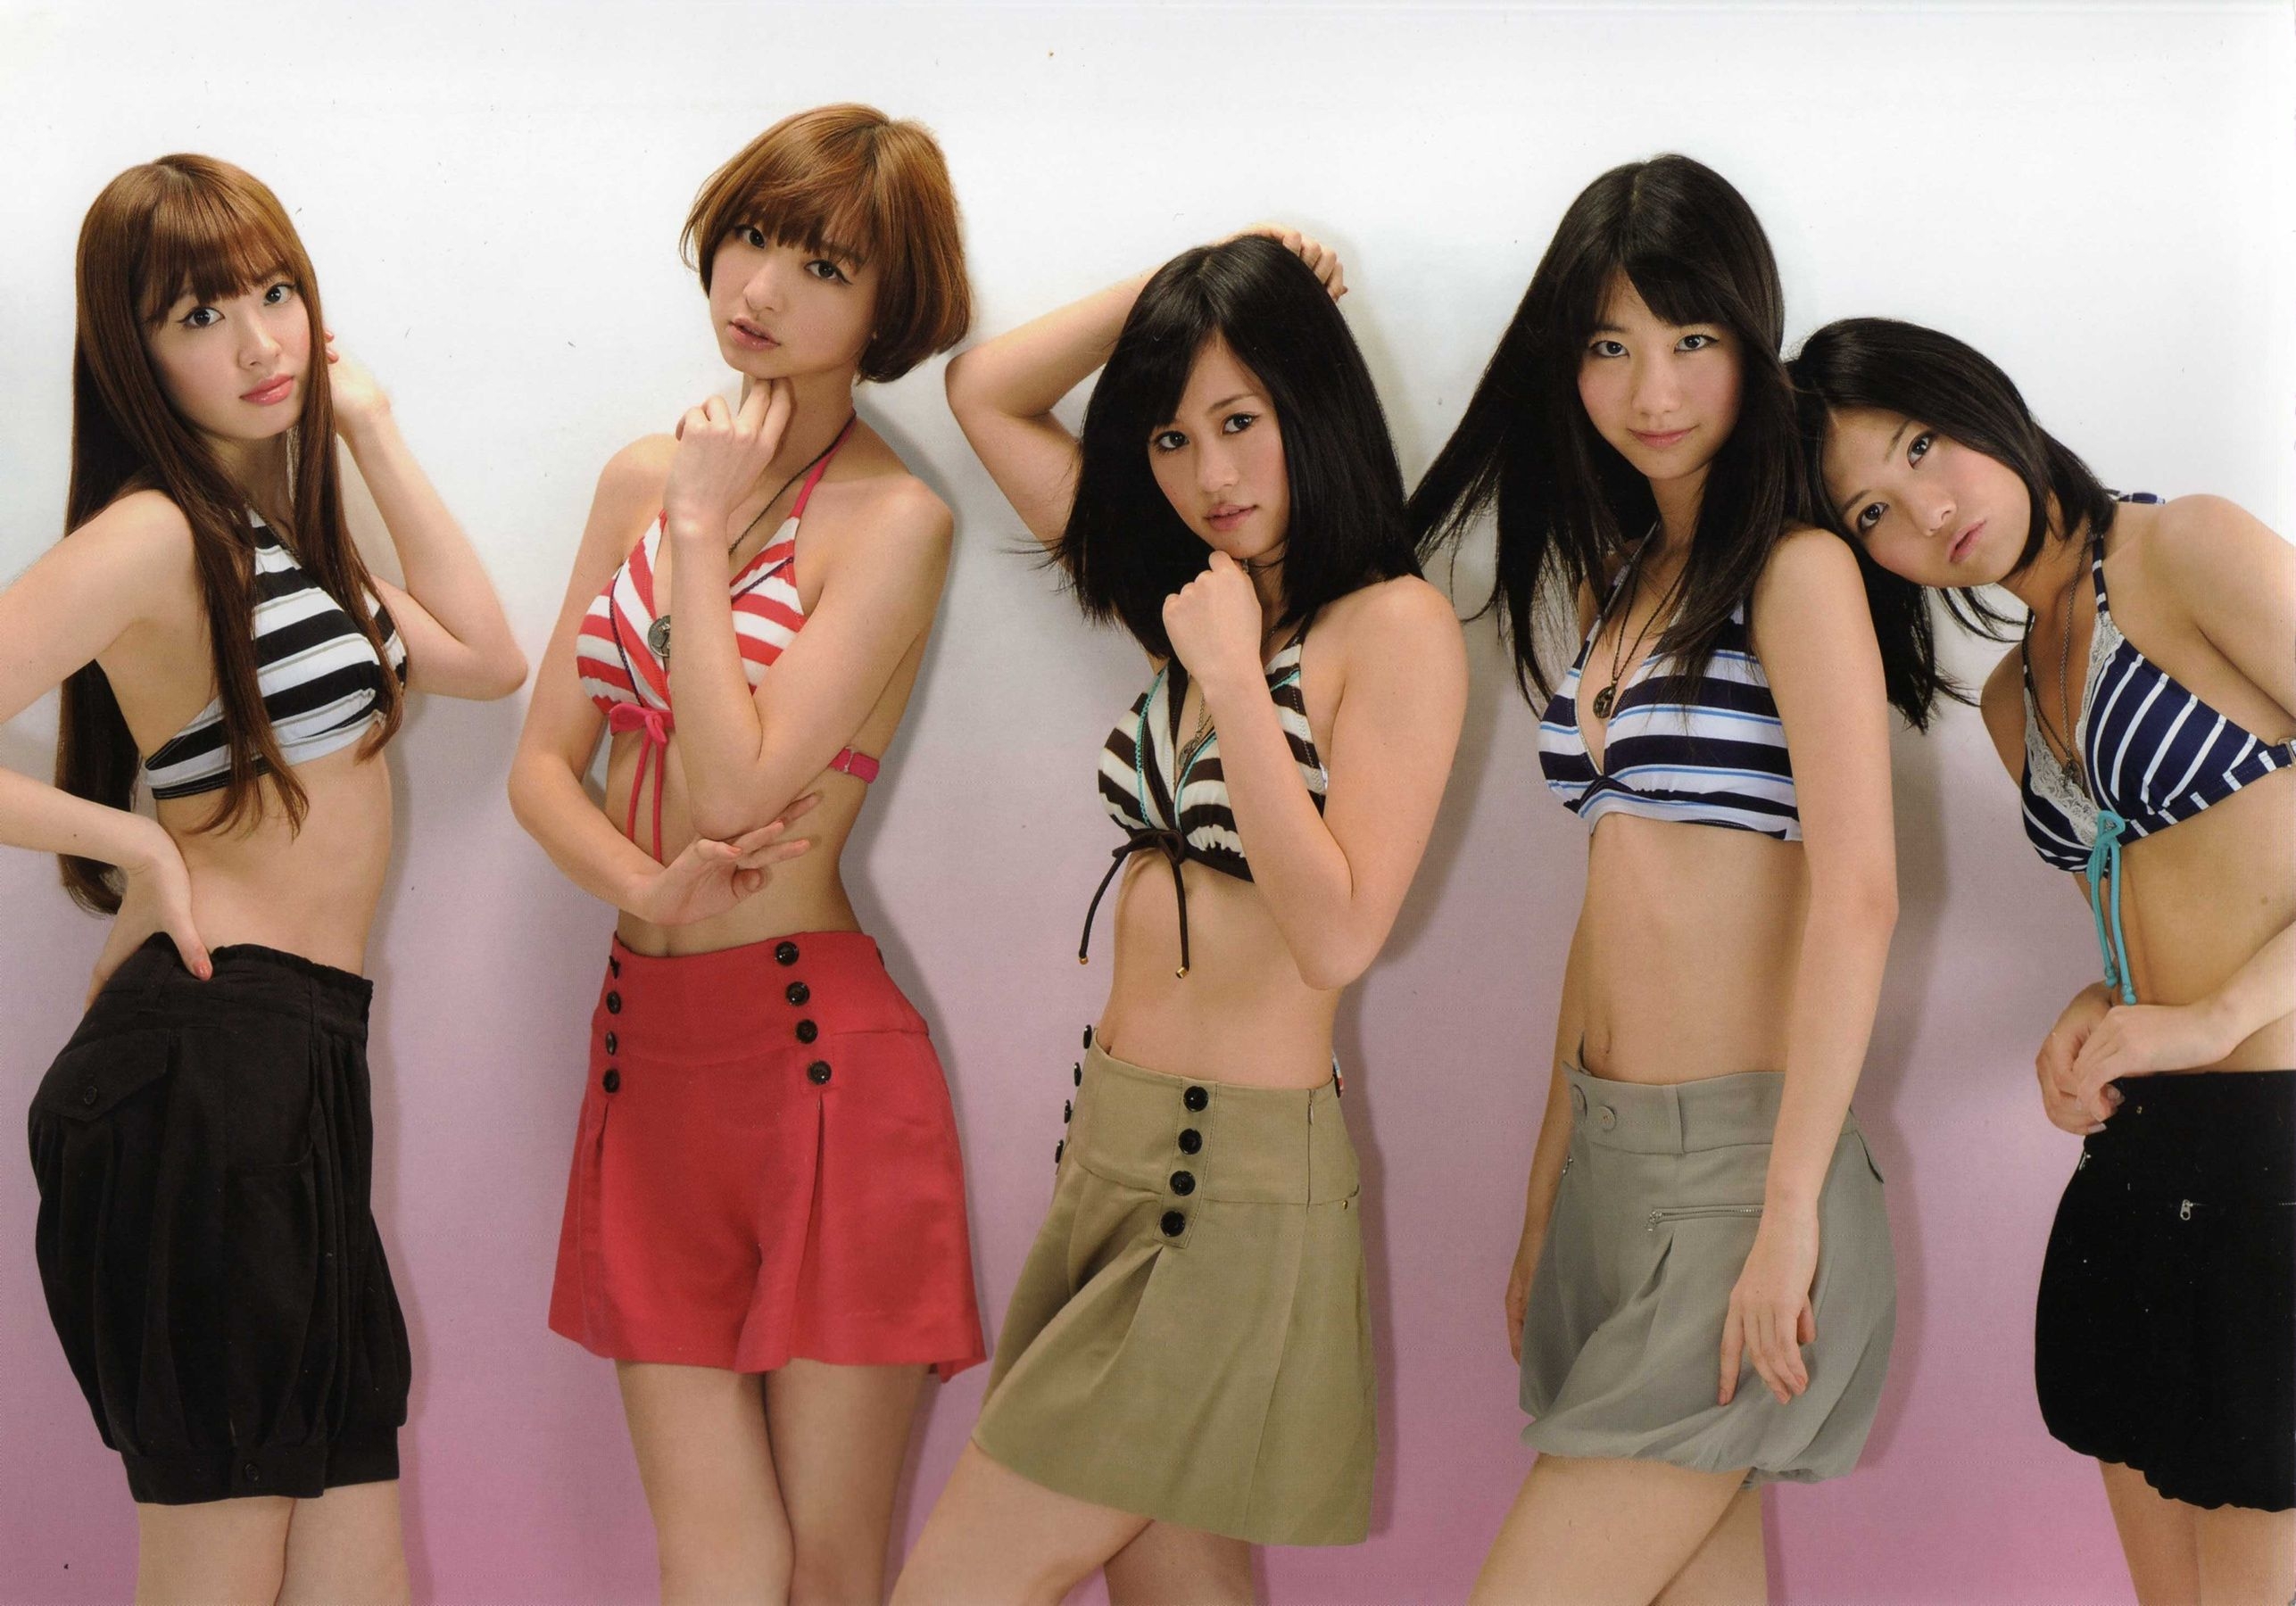 日本AKB48女子组合《2013 Fashion Book内衣秀》 